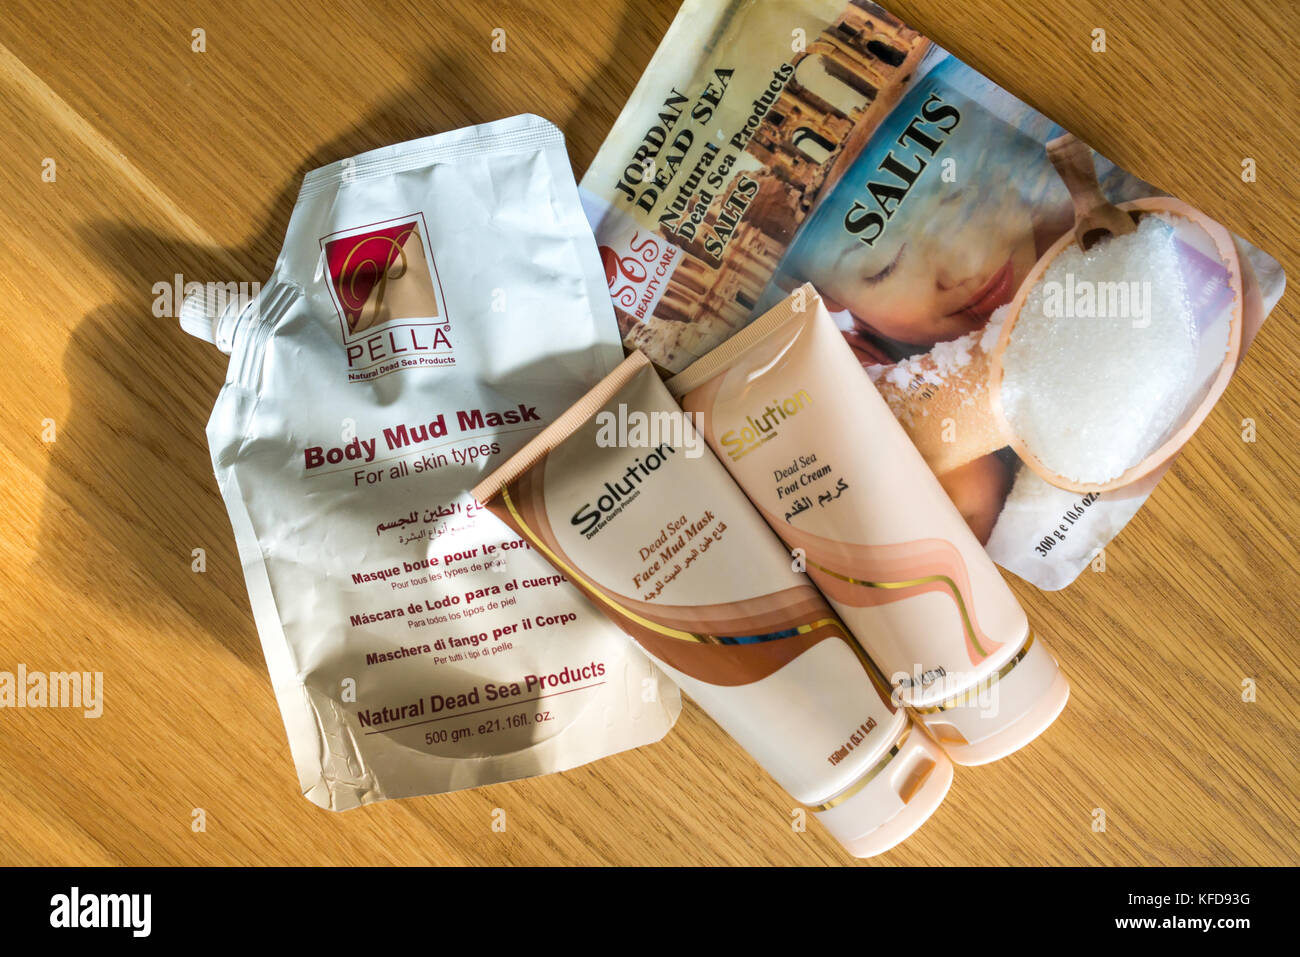 Recuerdos de vacaciones de los productos cosméticos del Mar Muerto, Jordania, incluidas las sales de baño, crema para los pies, el cuerpo de barro, máscara facial y máscara de barro Foto de stock